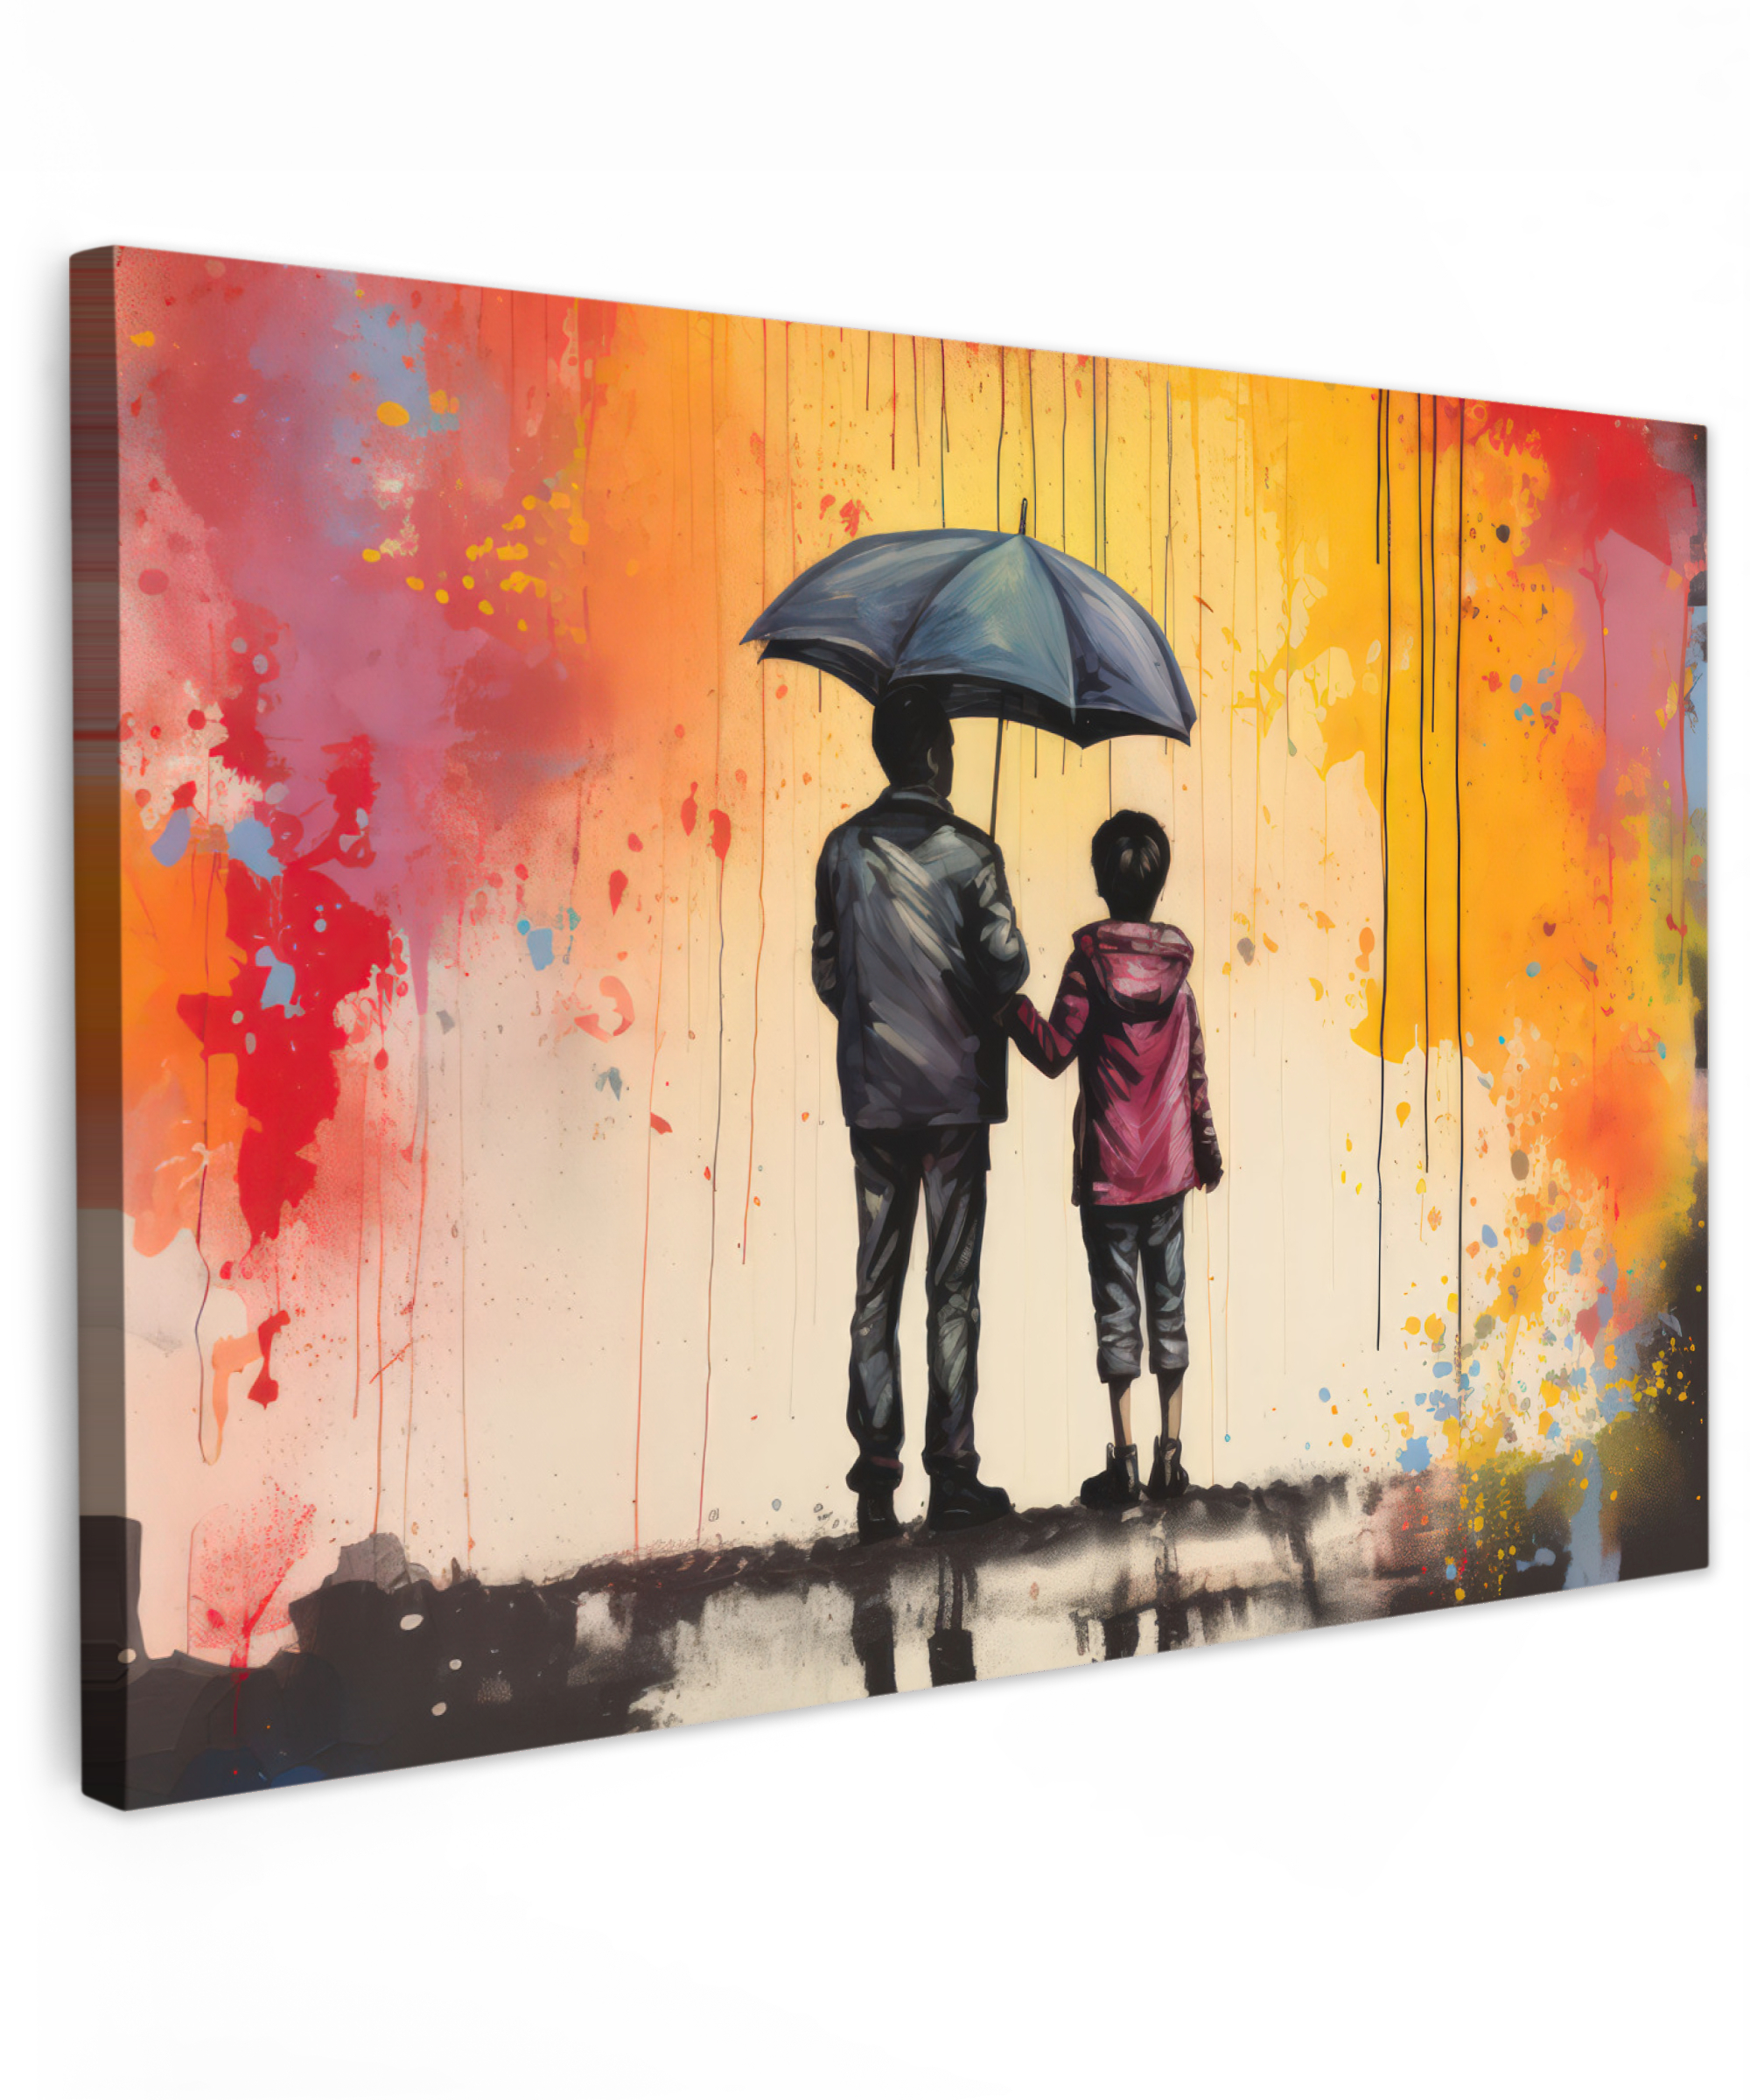 Leinwandbild - Graffiti - Regenschirm - Menschen - Farben - Kunst